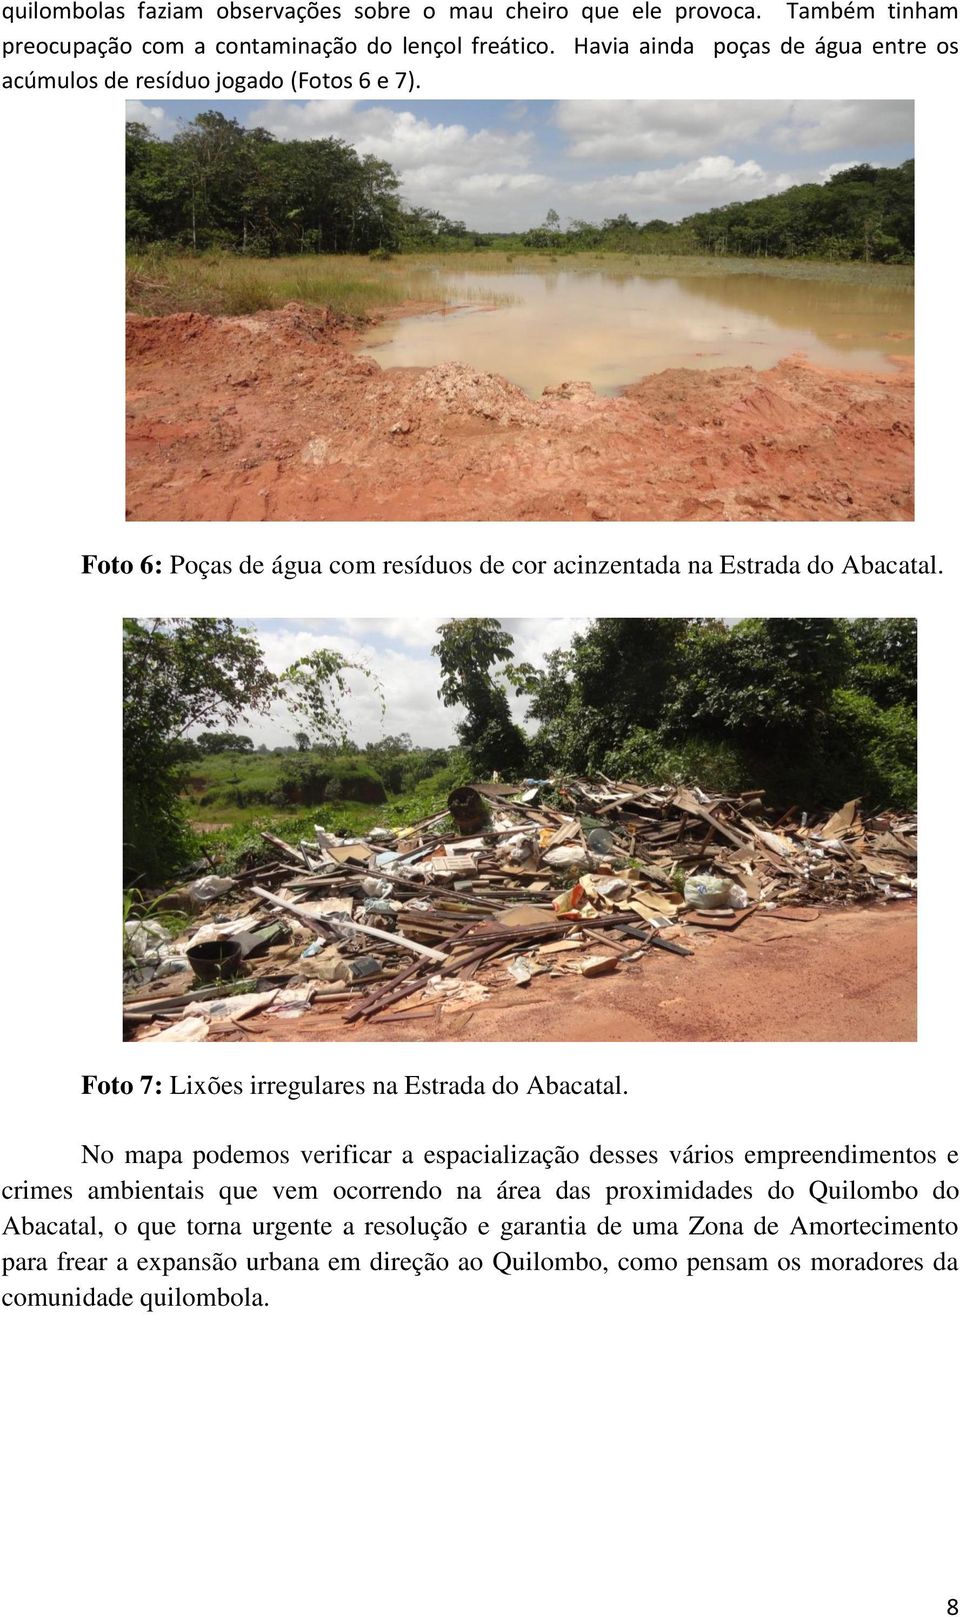 Foto 7: Lixões irregulares na Estrada do Abacatal.